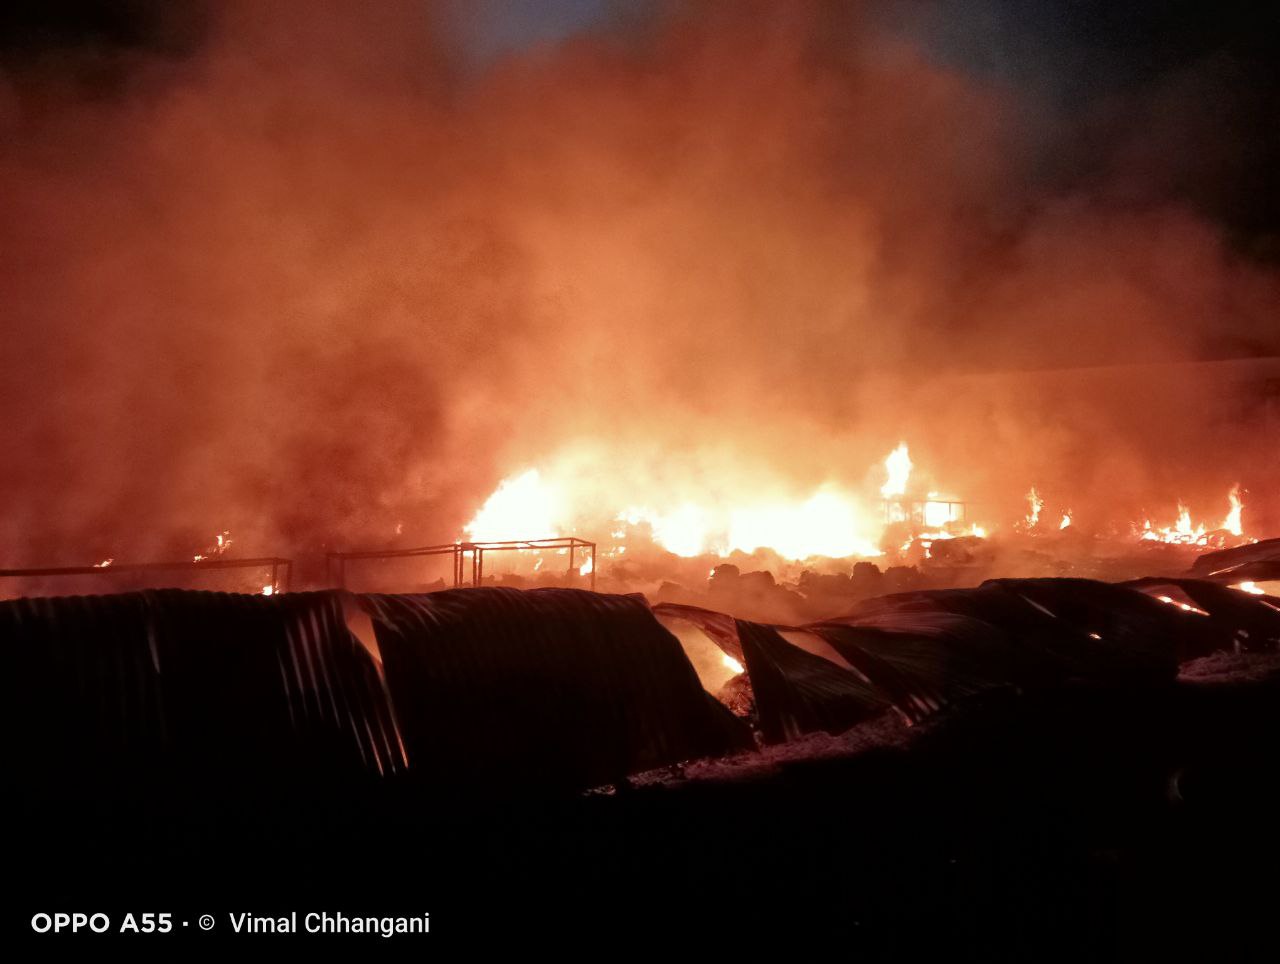 वूलन मार्केट में आग लगने से दुकानदार जिंदा जला, 50 दुकानें जलकर खाक, देखें वीडियो